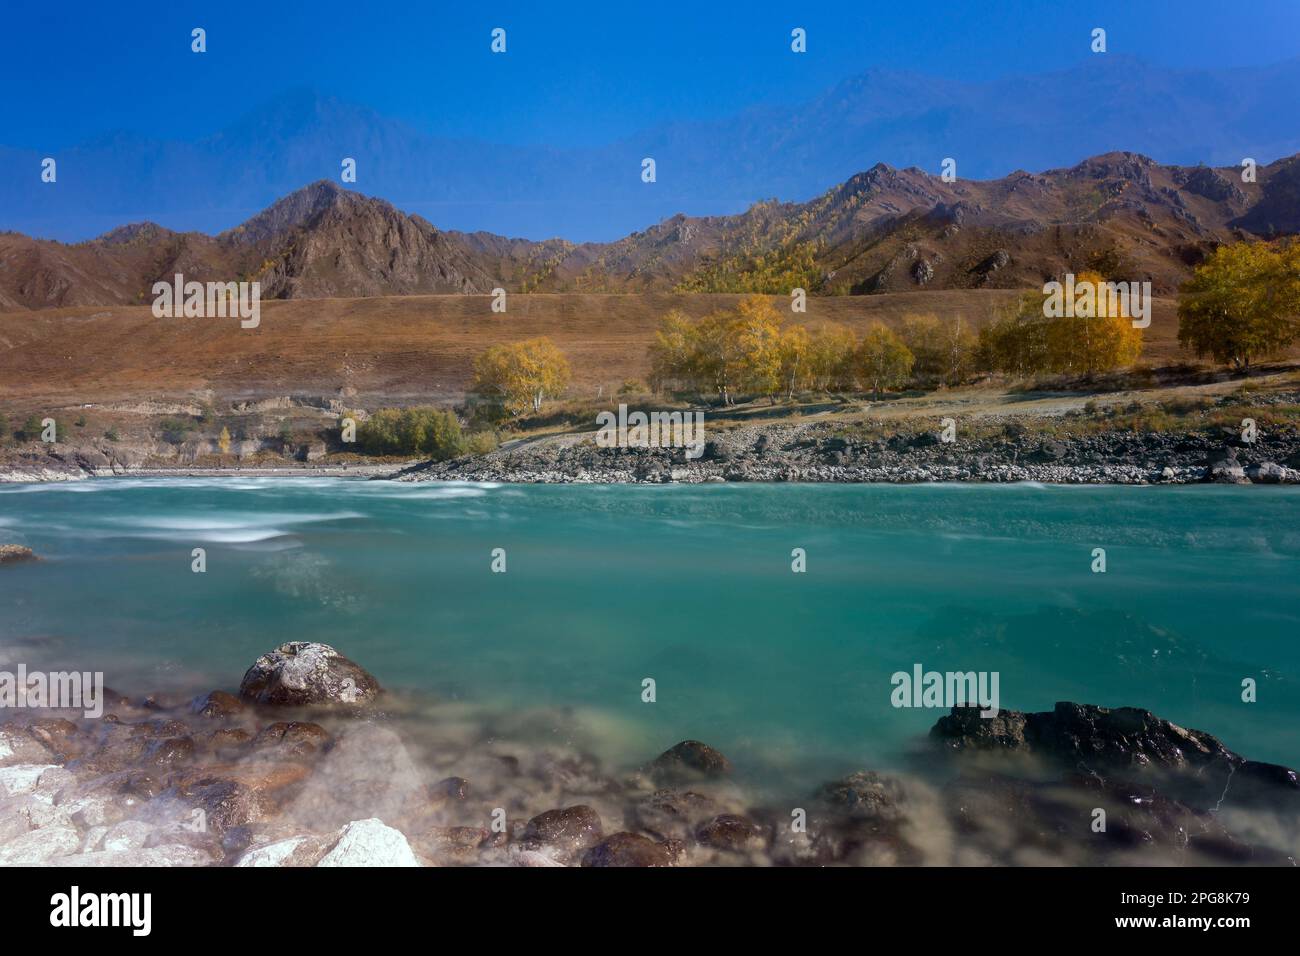 Foto astratta del movimento del rapido flusso del fiume di montagna Katun, offuscata dal metodo di lunga esposizione, tra le pietre e le rocce in Altai su A. Foto Stock